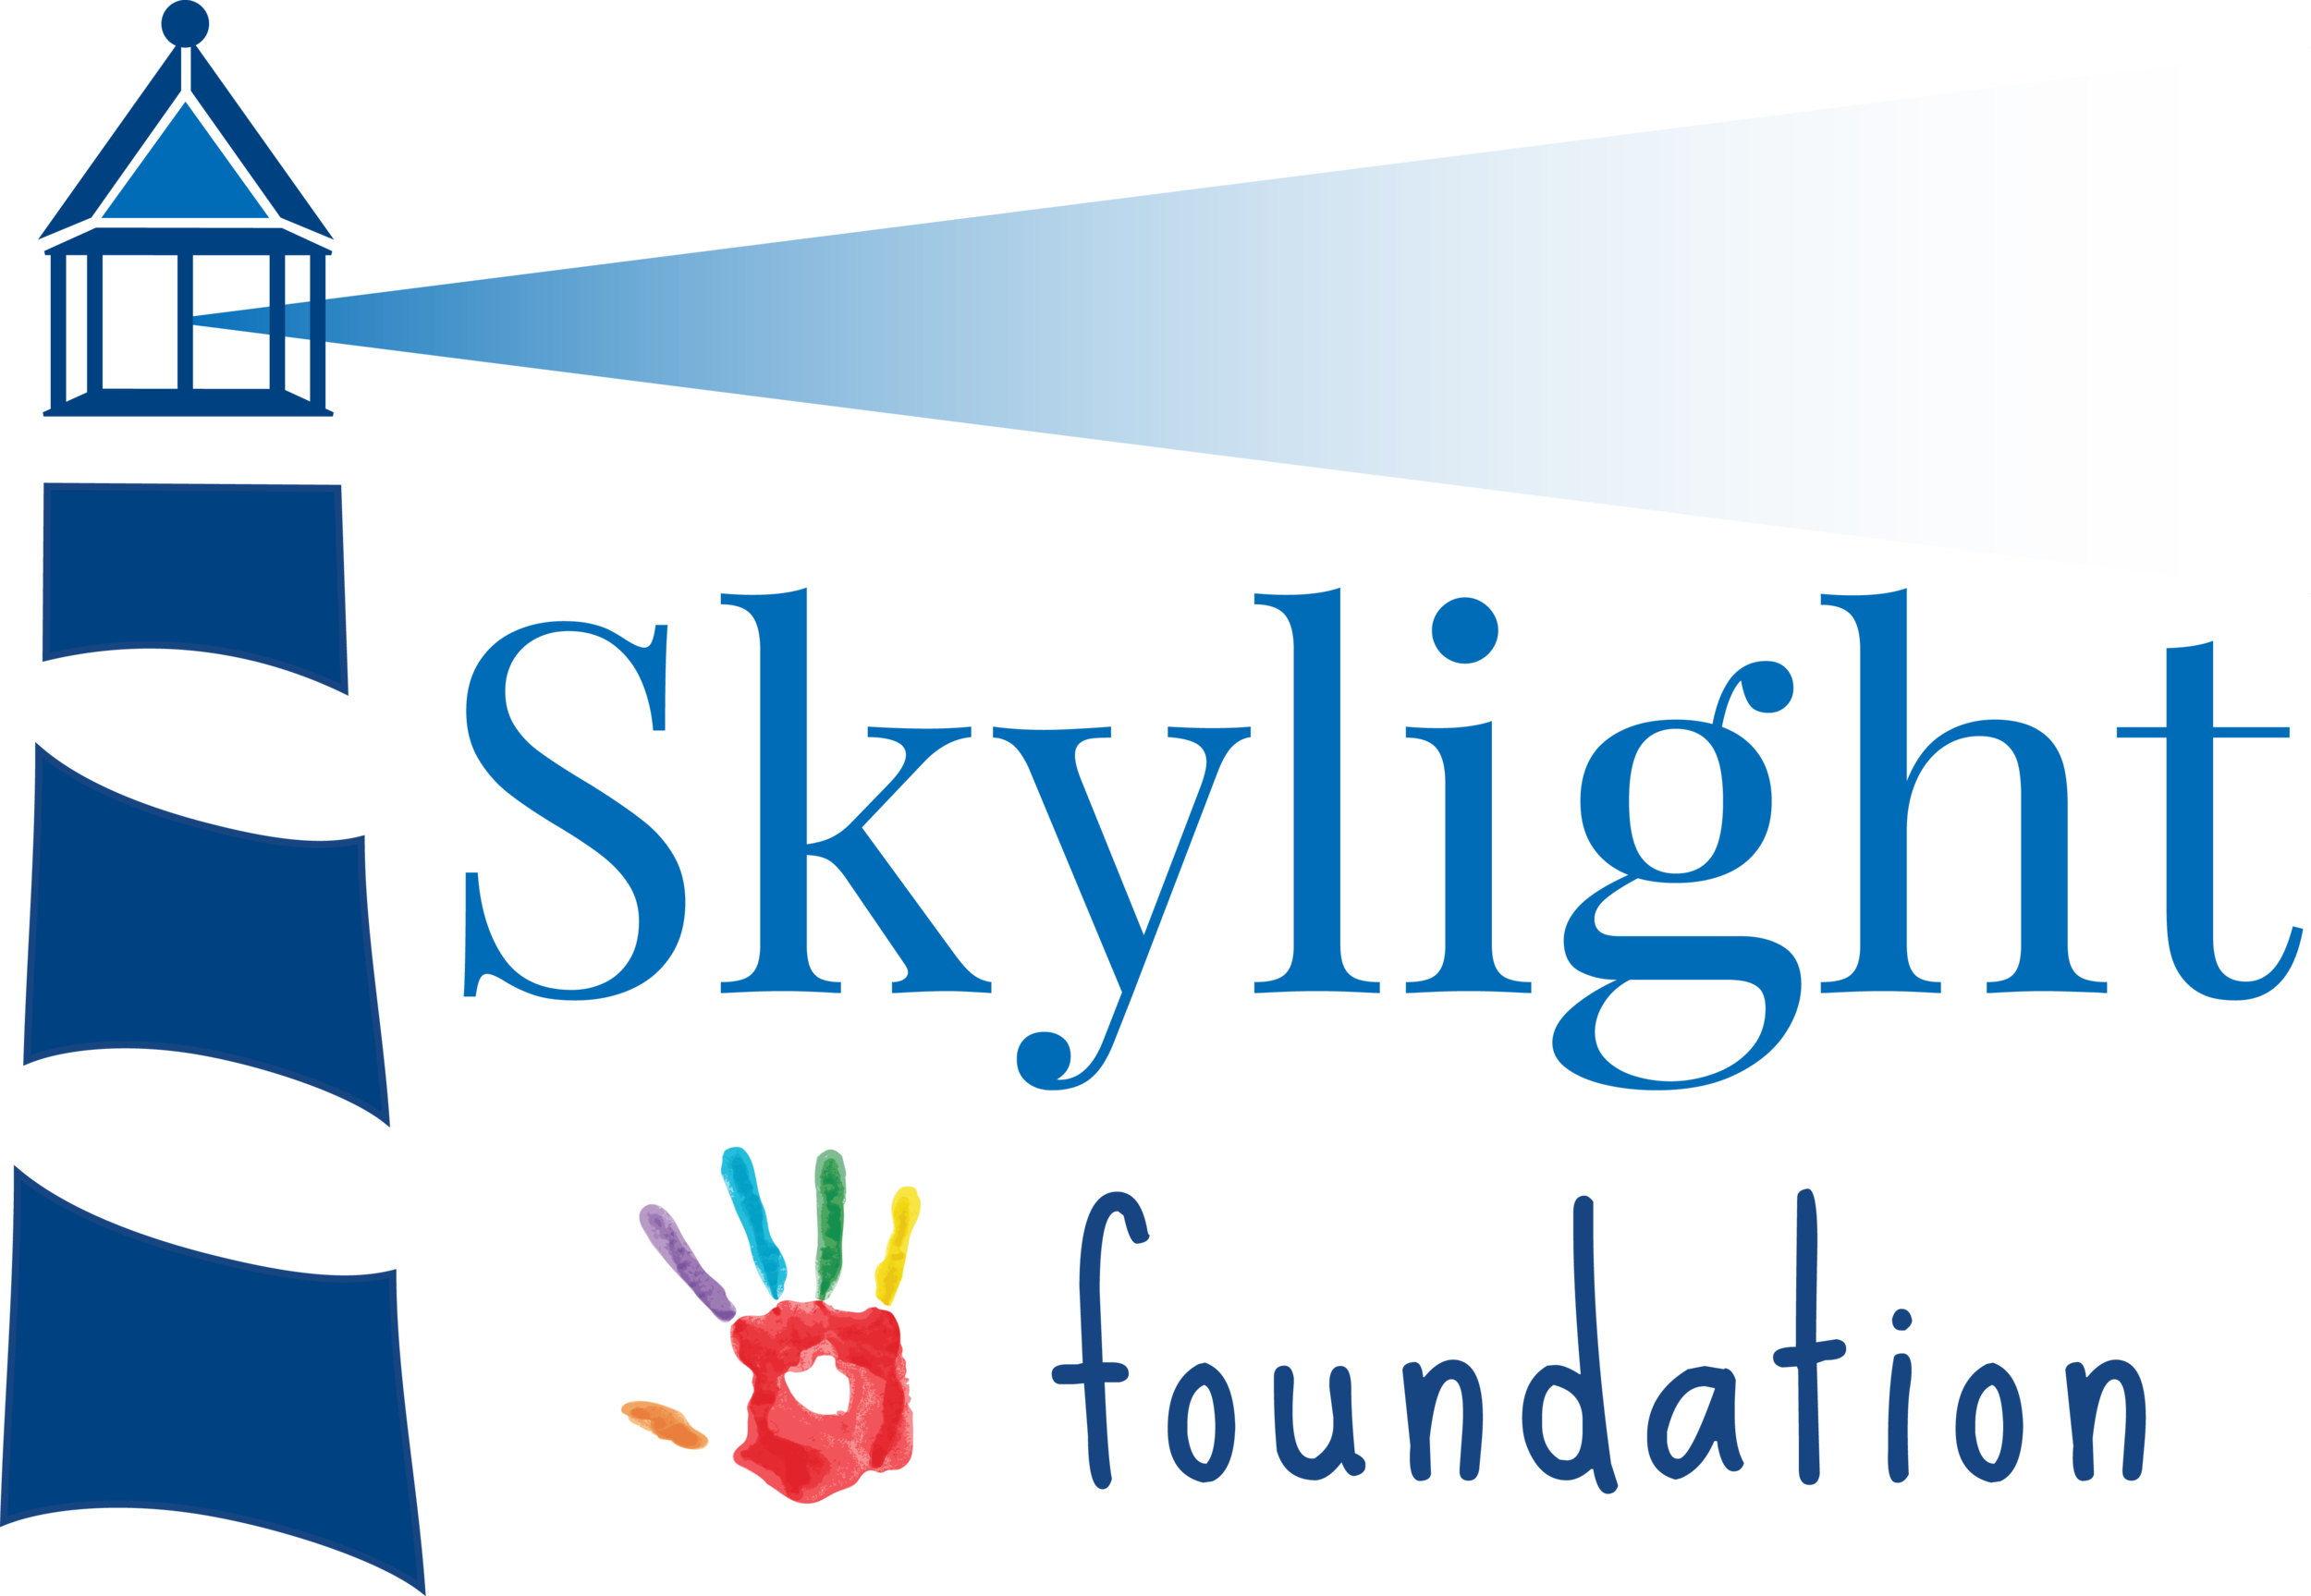 Skylight foundation logo.png